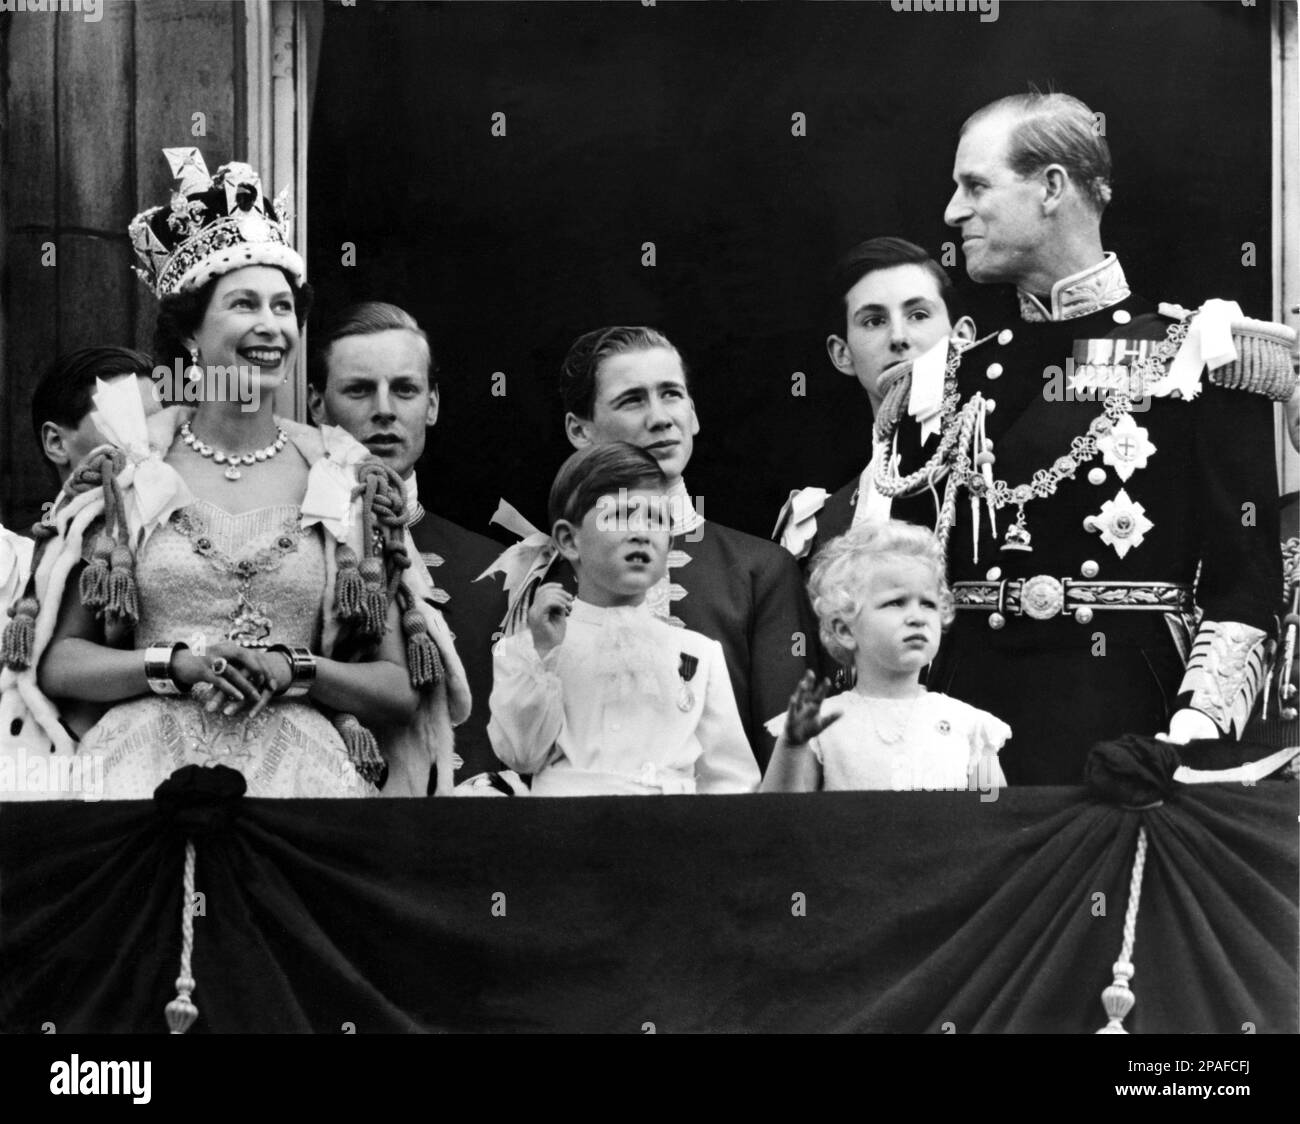 1953, 2 de junio , Palacio de Buckingham , Londres , Inglaterra : día de la coronación de la reina ISABEL II de Inglaterra (nacida en 1926). En esta foto con el príncipe PHILIP Mountbatten Duque de EDIMBURGO (nacido en 1921), los hijos del príncipe CARLOS de Gales (nacido en 1948) y la princesa Royal ANNE (nacido en 1950). El hijo de Duque y Duchesse Marina de KENT : EDUARDO duque de Kent y el príncipe MIGUEL de Kent - REALI - REALEZA - nobili - Nobiltà - nobleza - GRAN BRETAÑA - INGHILTERRA - REGINA - WINDSOR - Casa de Sajonia-Coburgo-Gotha - celebridad personalidad celebridades personalitie Foto de stock